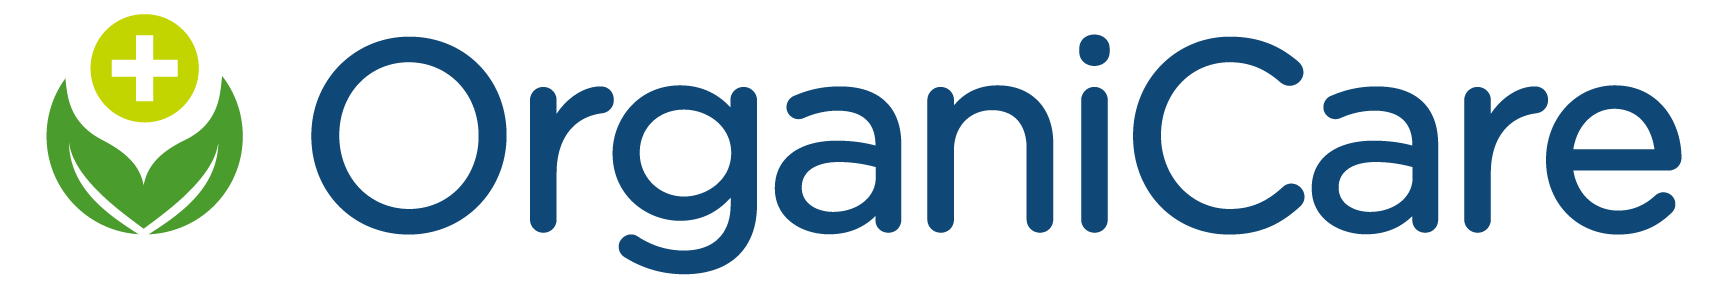 OrganiCare_Logo